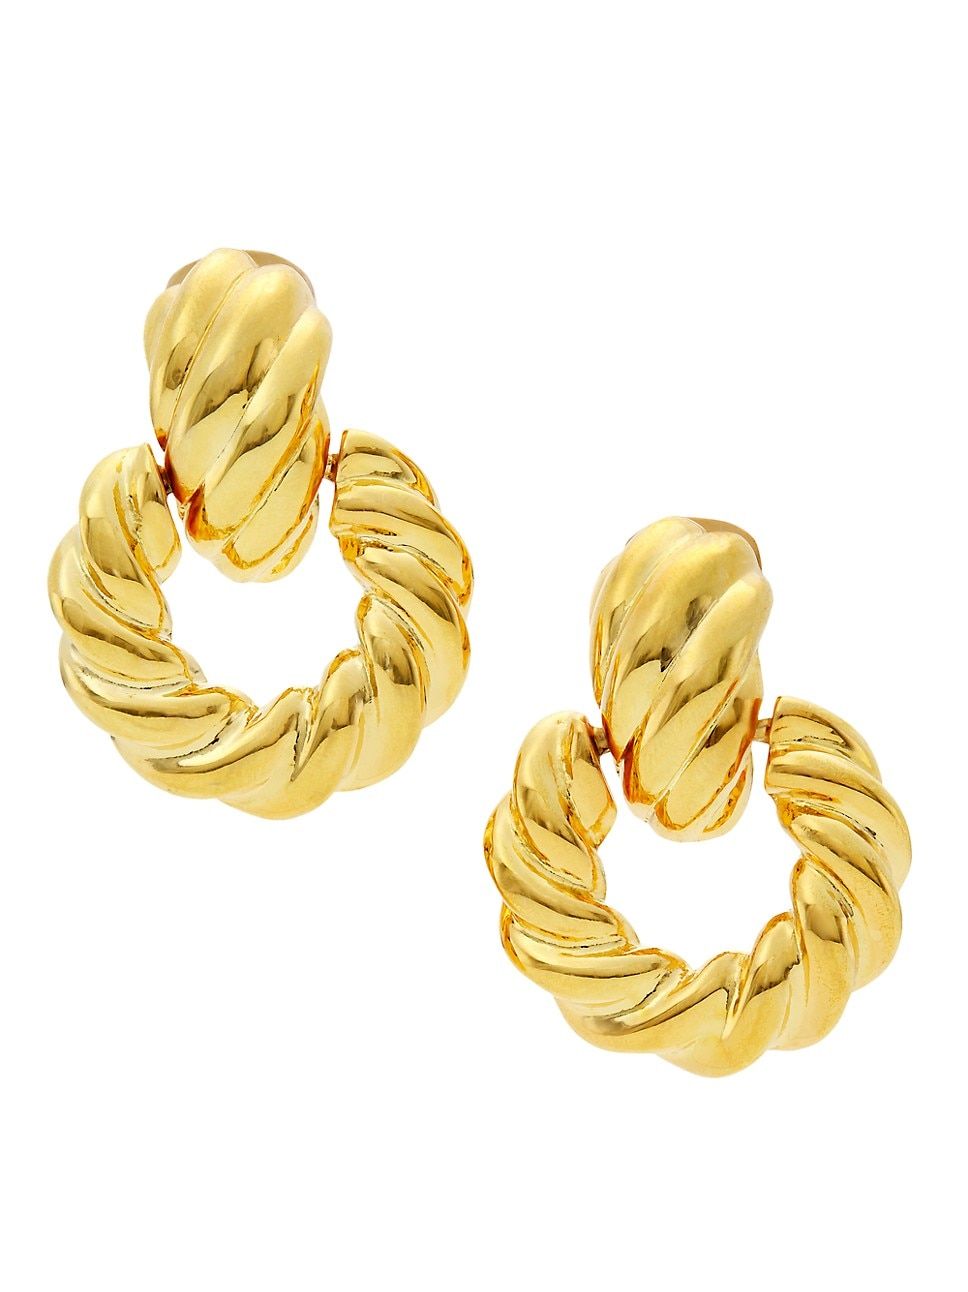 22K Gold-Plated Twisted Doorknocker Earrings | Saks Fifth Avenue